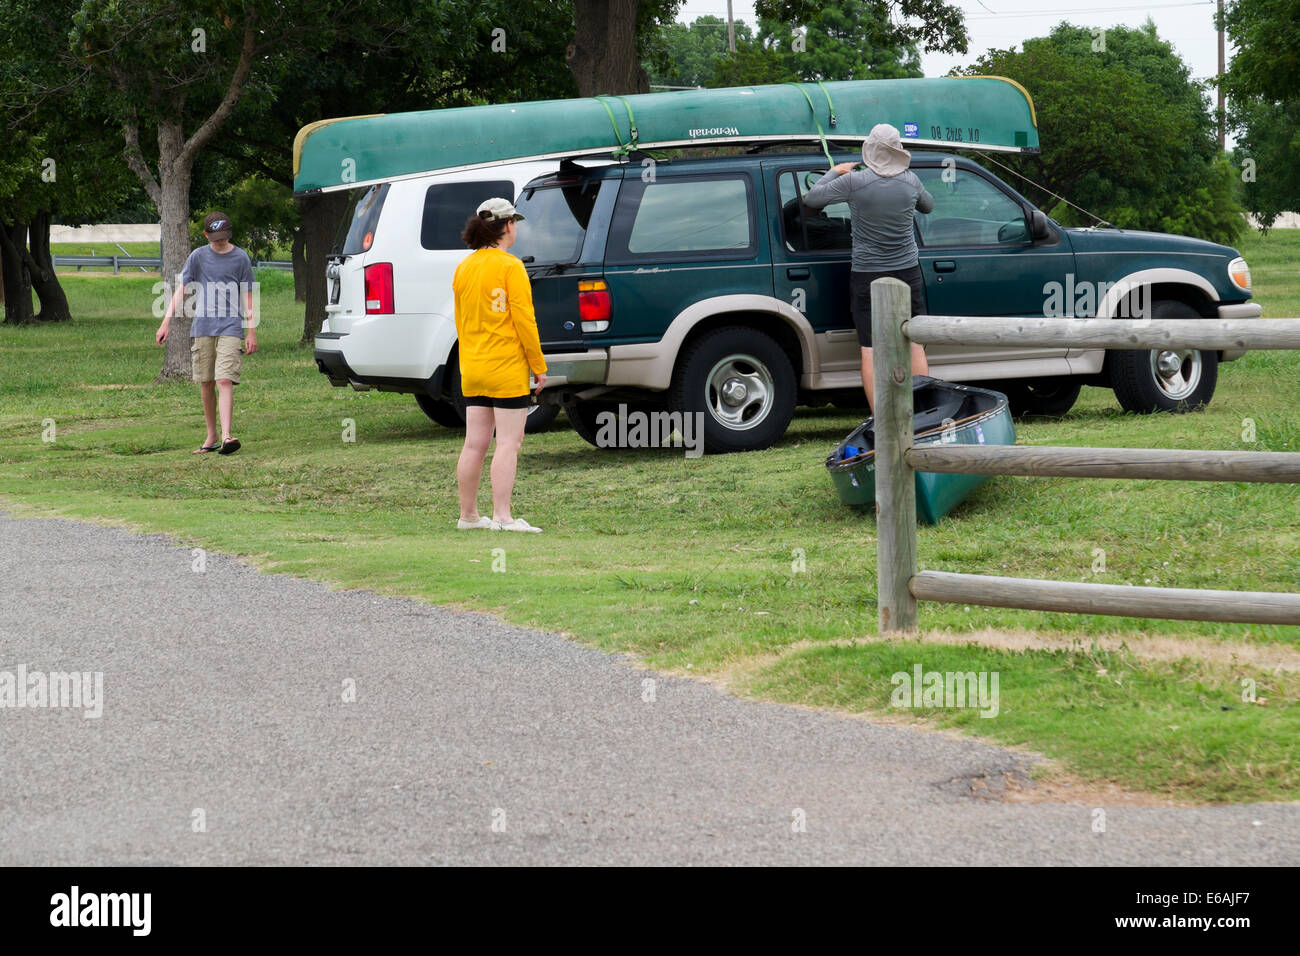 Un uomo fissa una canoa sulla sommità del suo veicolo in un lago di Oklahoma mentre due membri della famiglia sono nelle vicinanze. Oklahoma, Stati Uniti d'America. Foto Stock